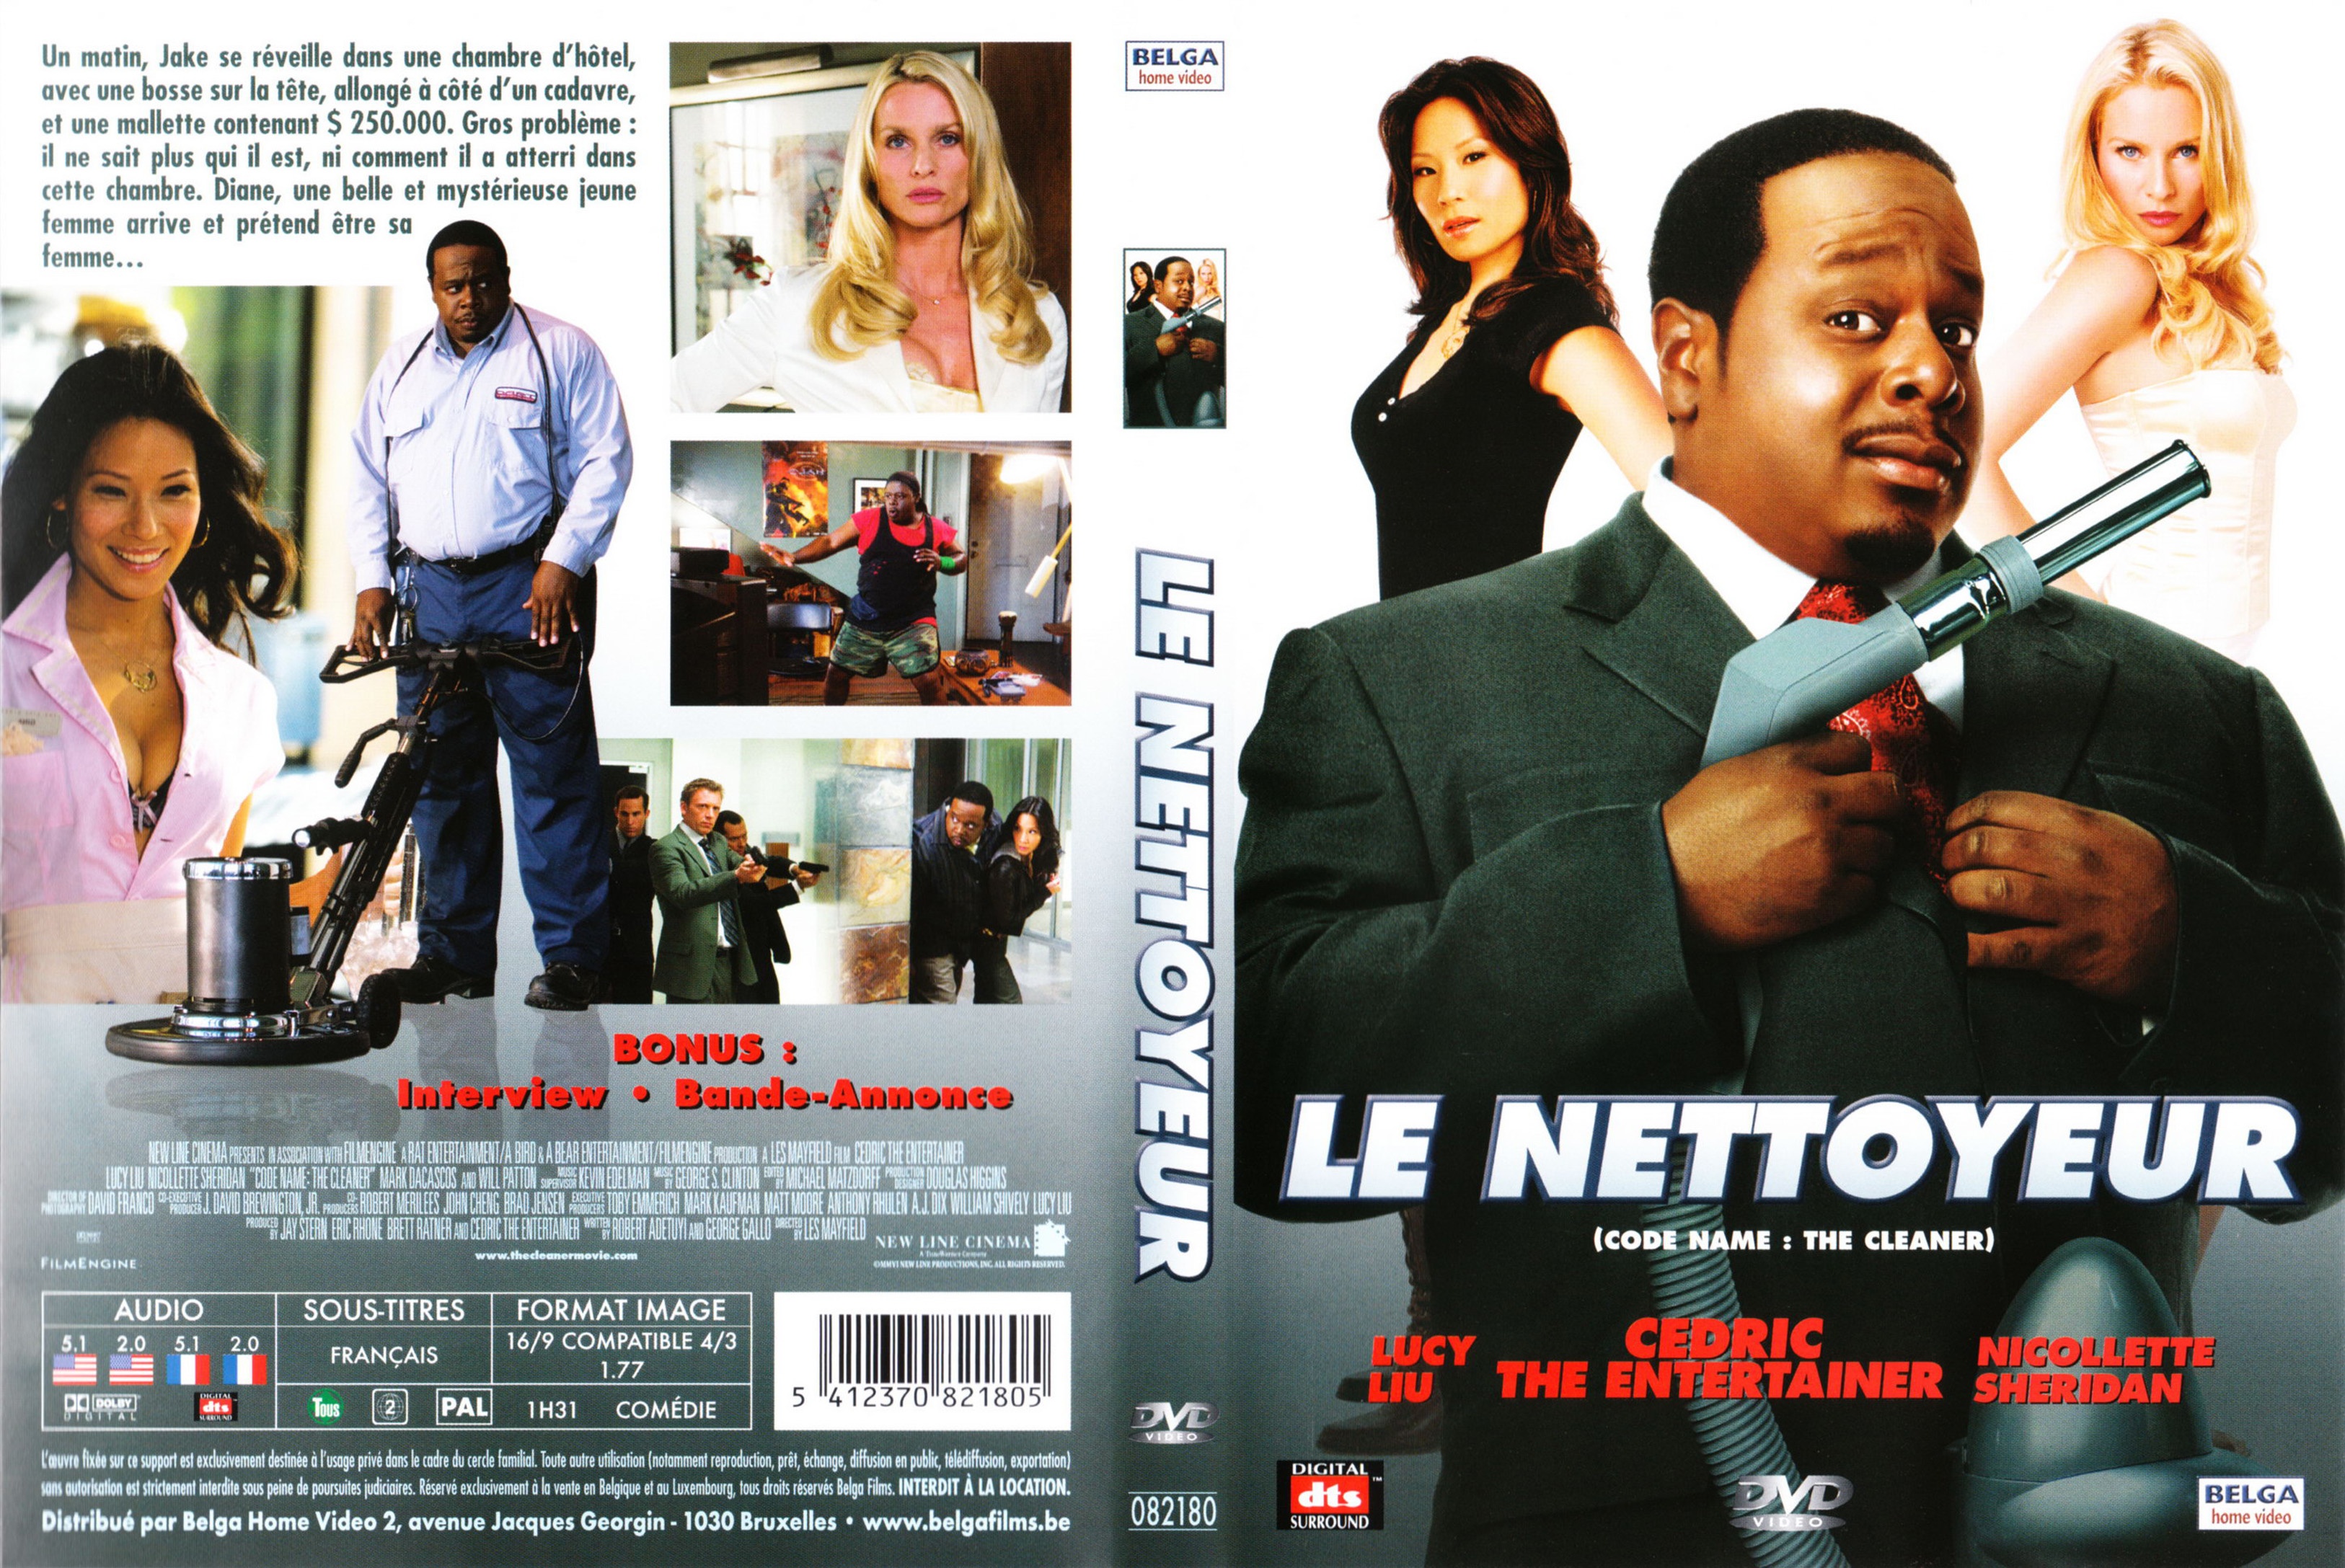 Jaquette DVD Le nettoyeur